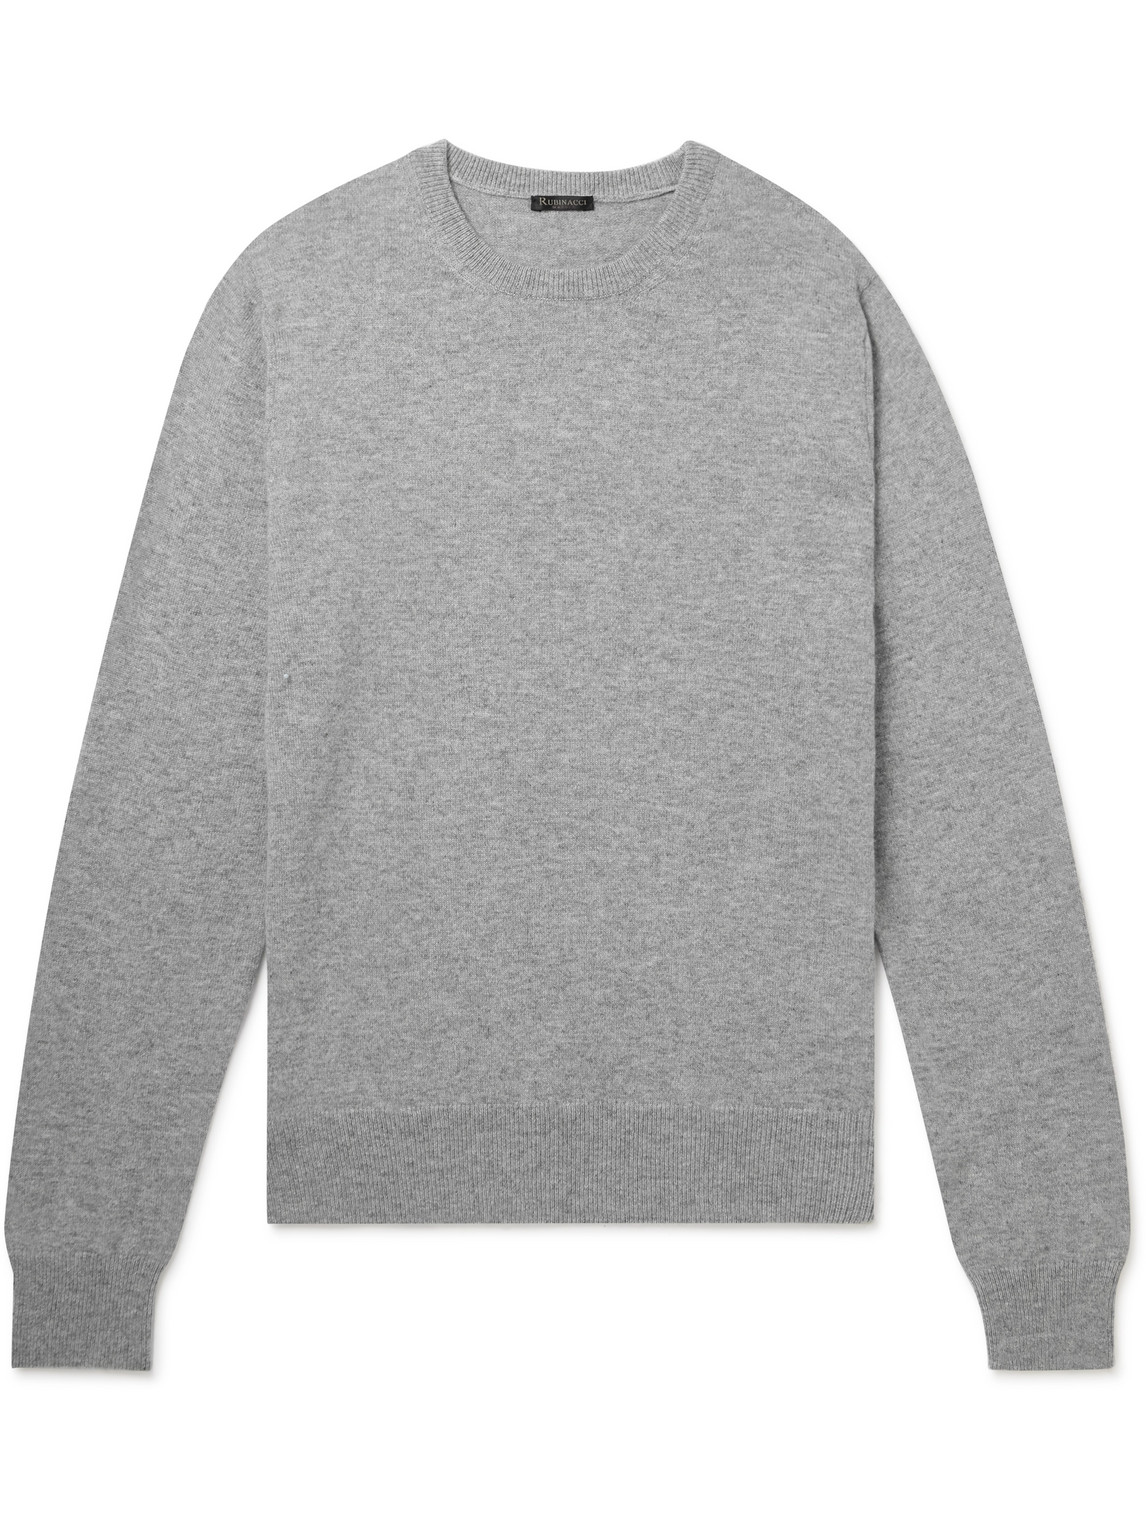 Rubinacci Cashmere Sweater In Gray